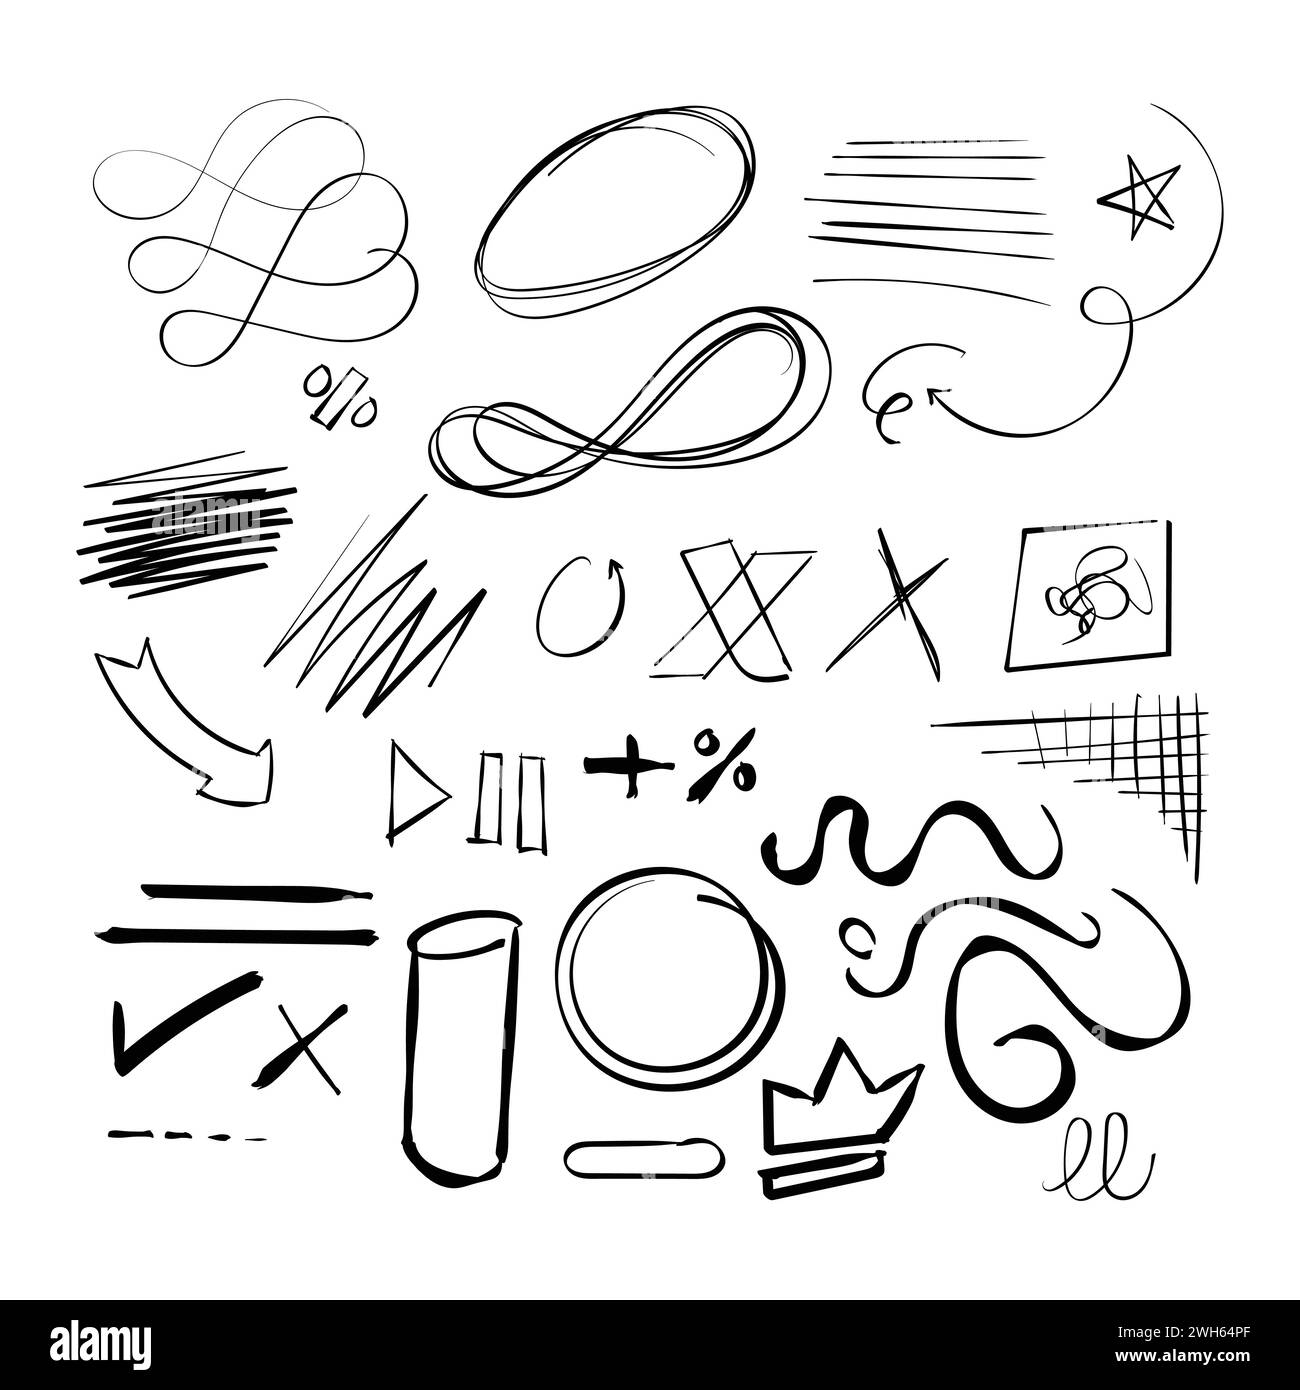 Zufällige Hand gezeichnete Scribble Doodle Symbole Vektor zufällige Hand gezeichnete Doodles Symbol Stock Vektor